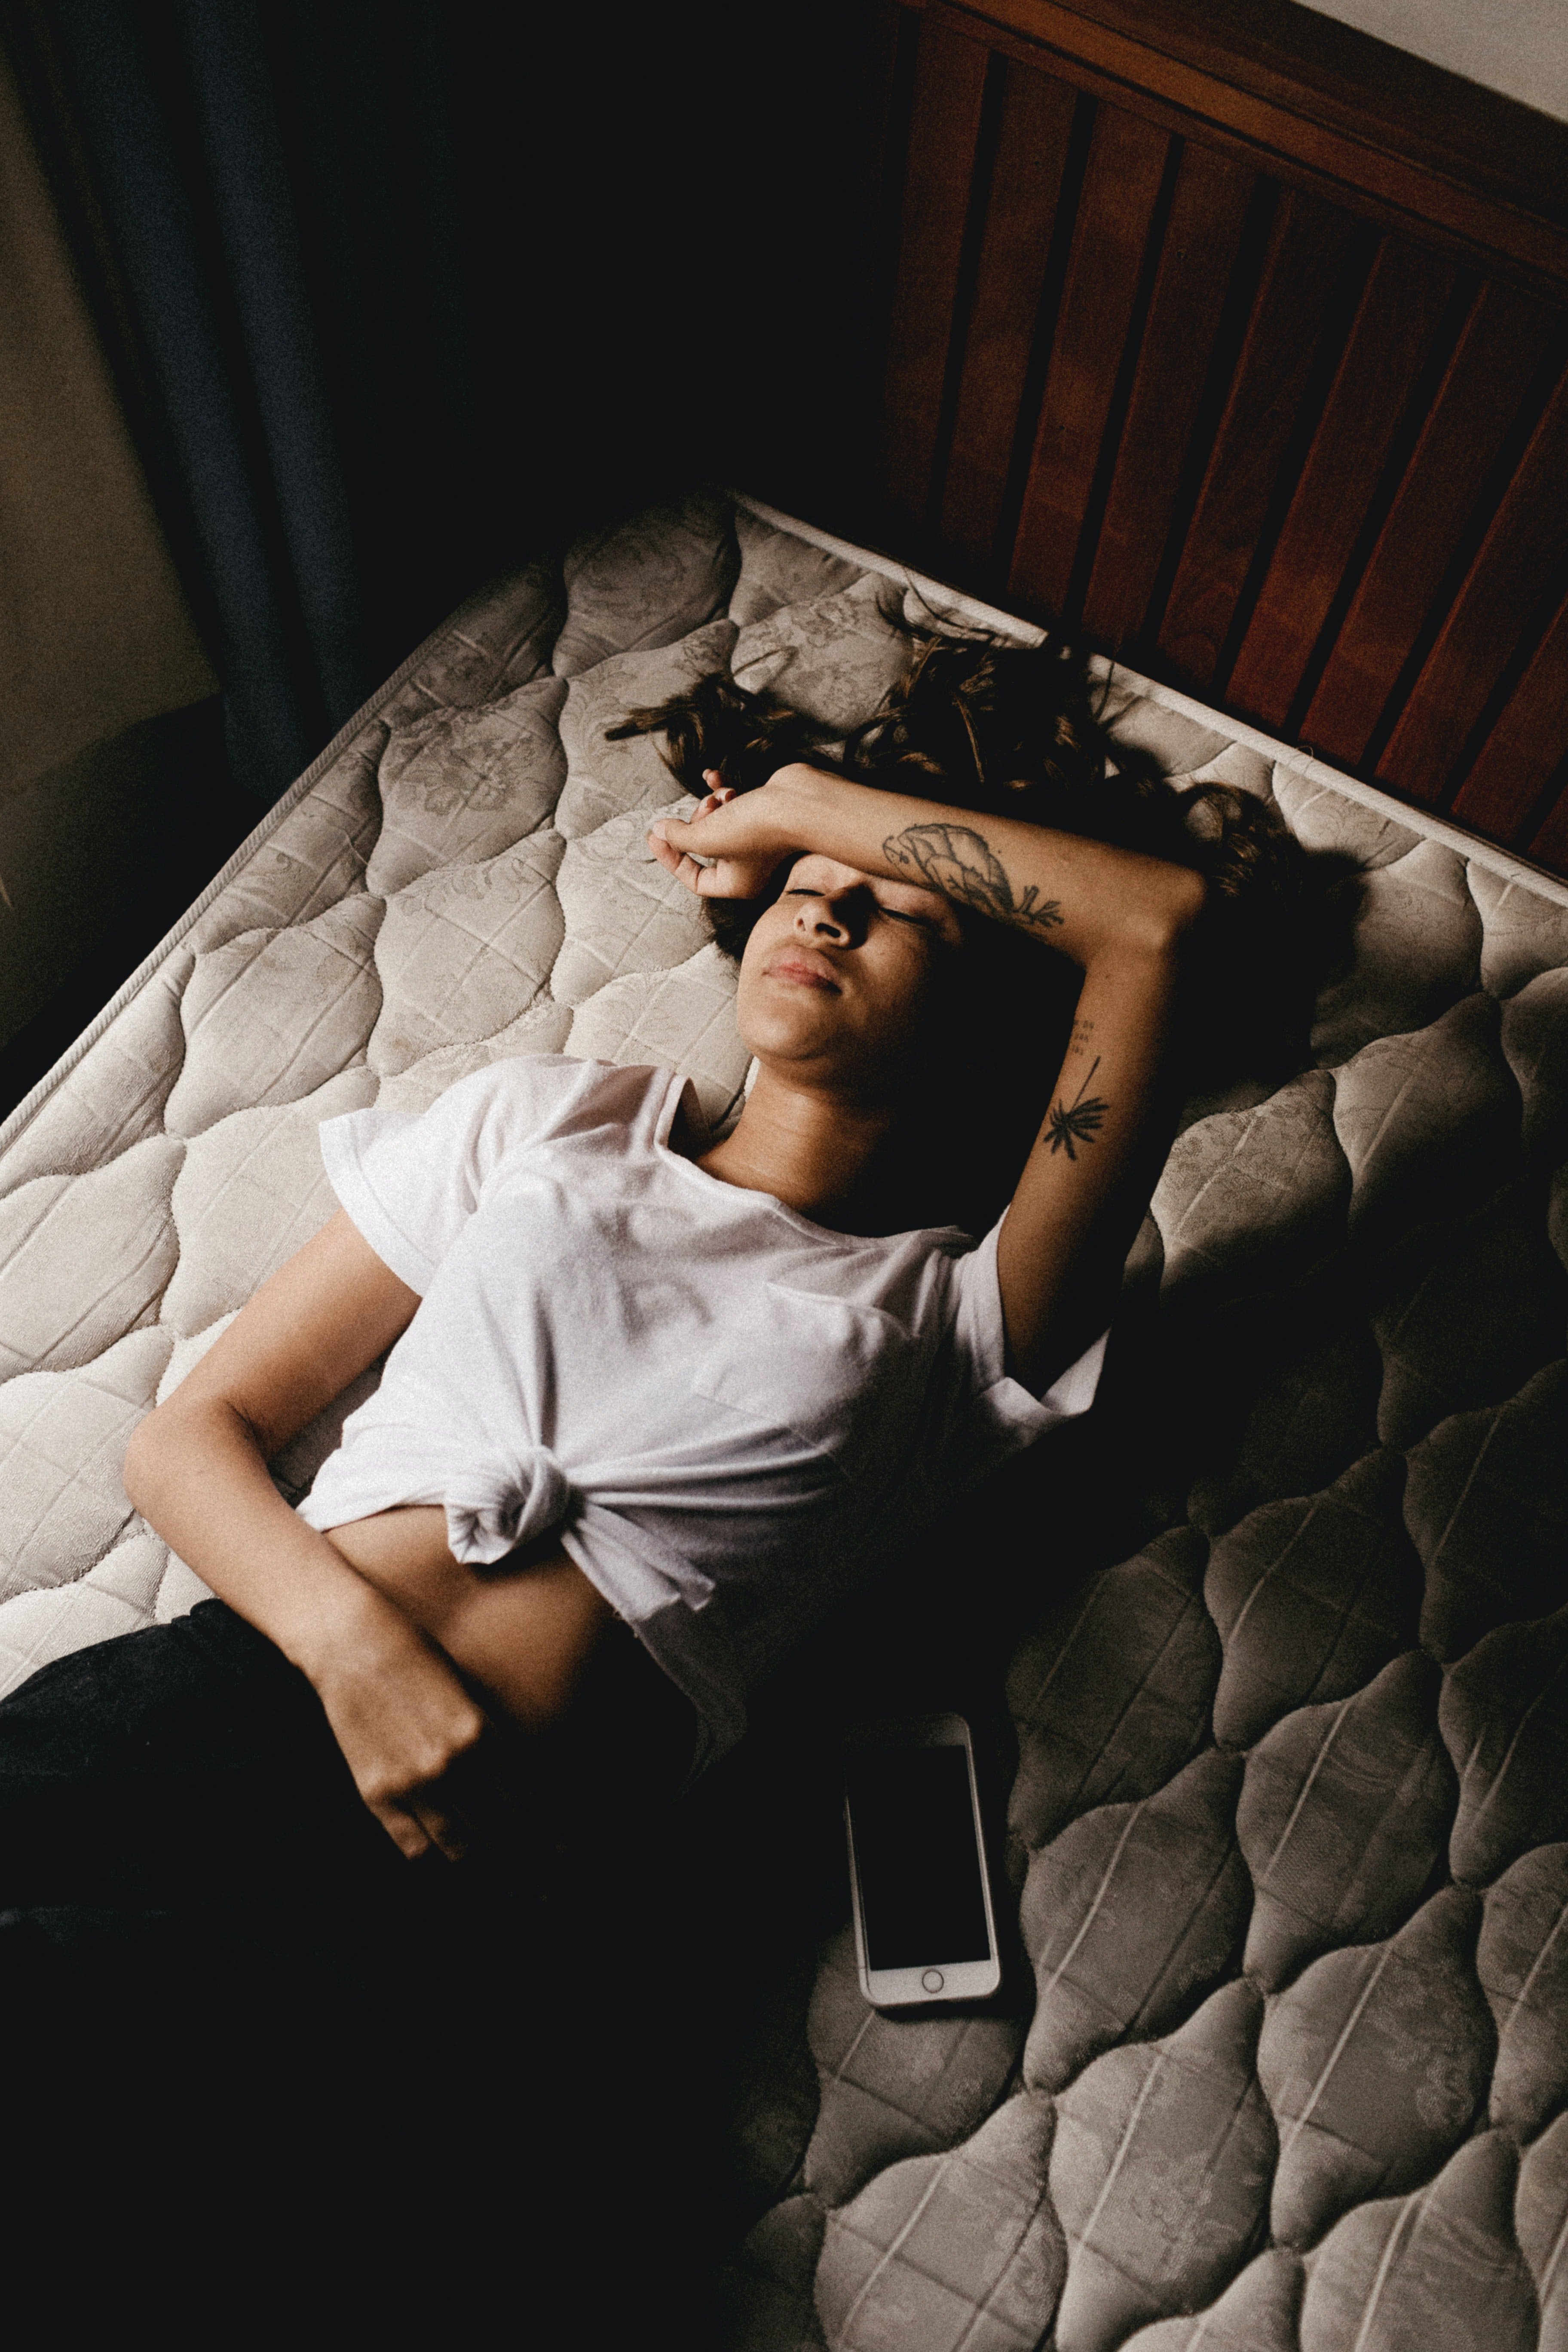 Una joven descansa sobre un colchón sin sábanas. | Foto: Pexels